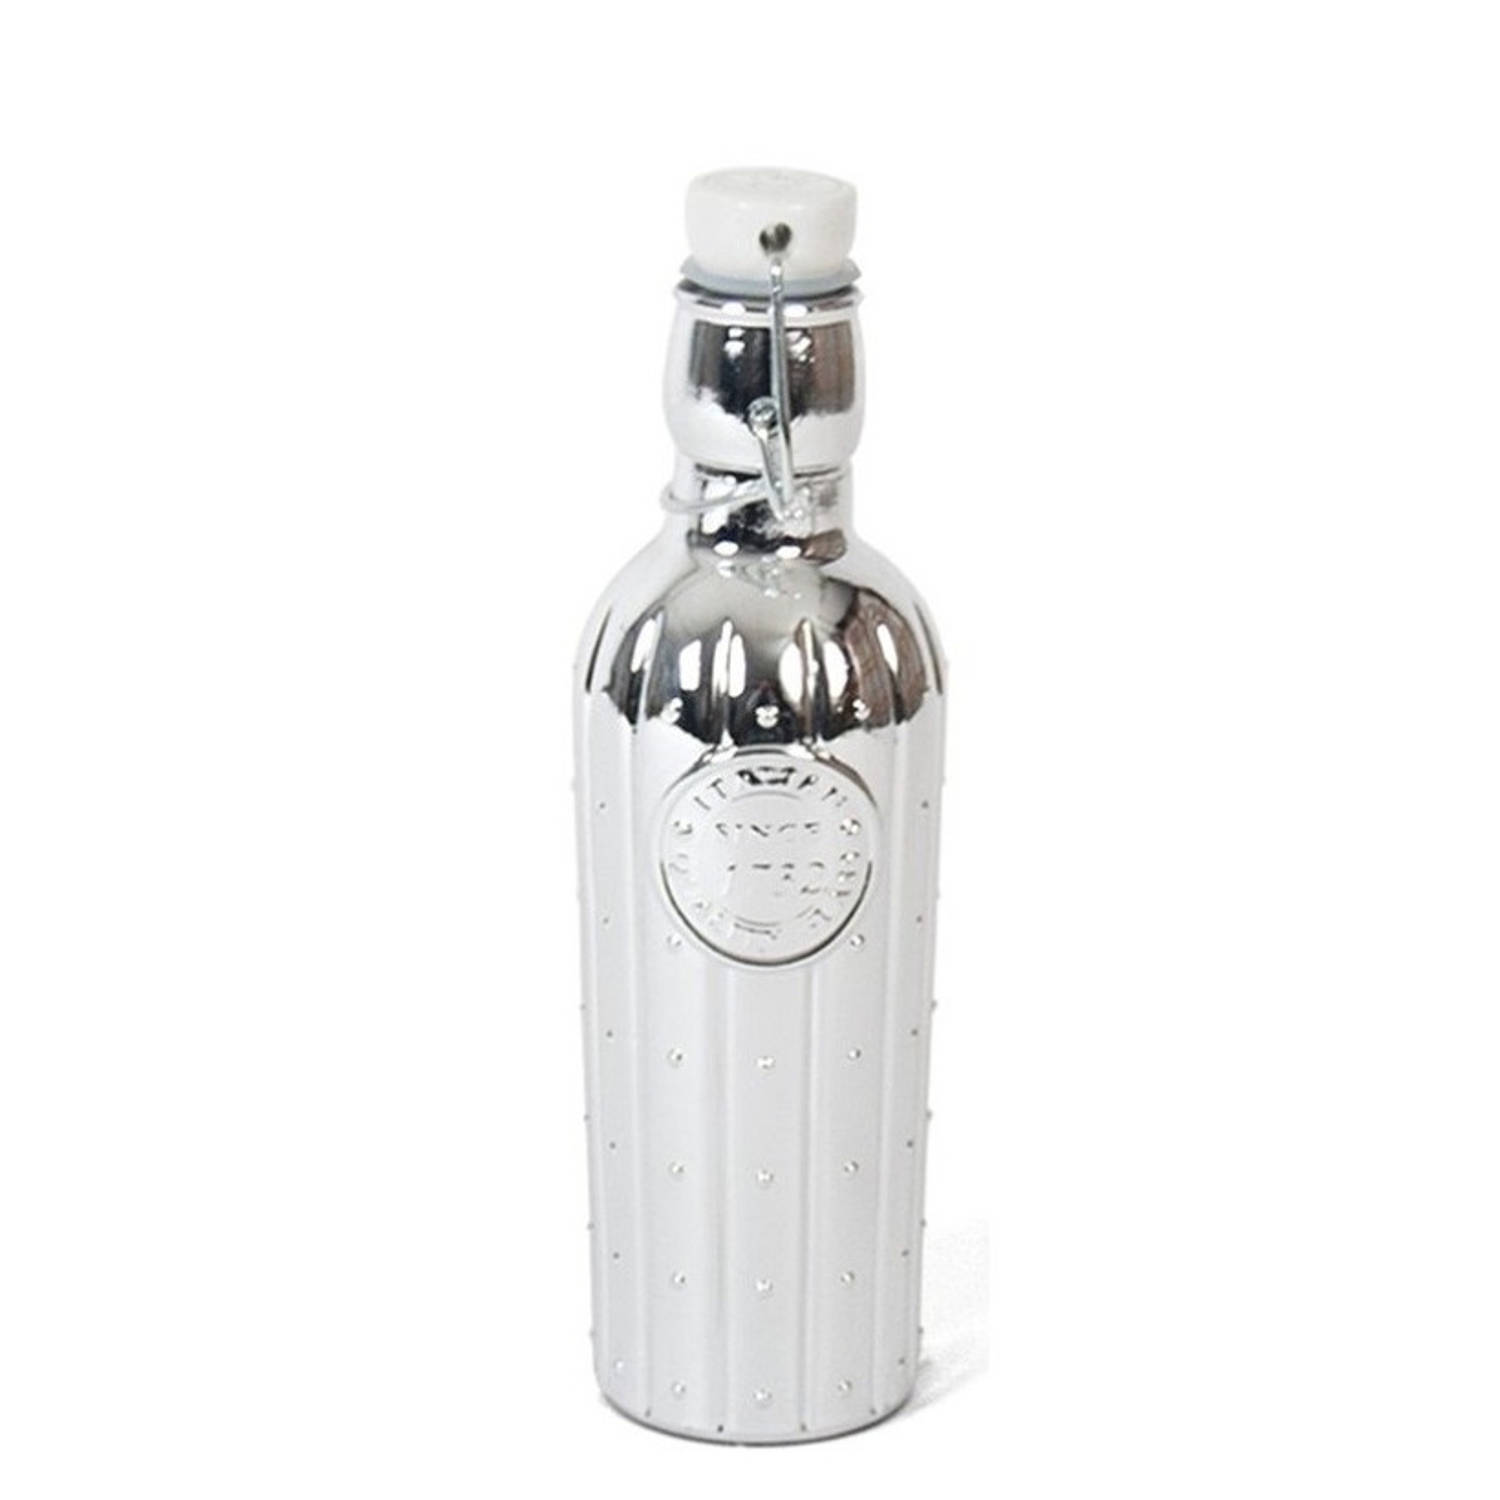 1x Glazen woondecoratie flessen zilver met beugeldop 550 ml - Decoratieve flessen